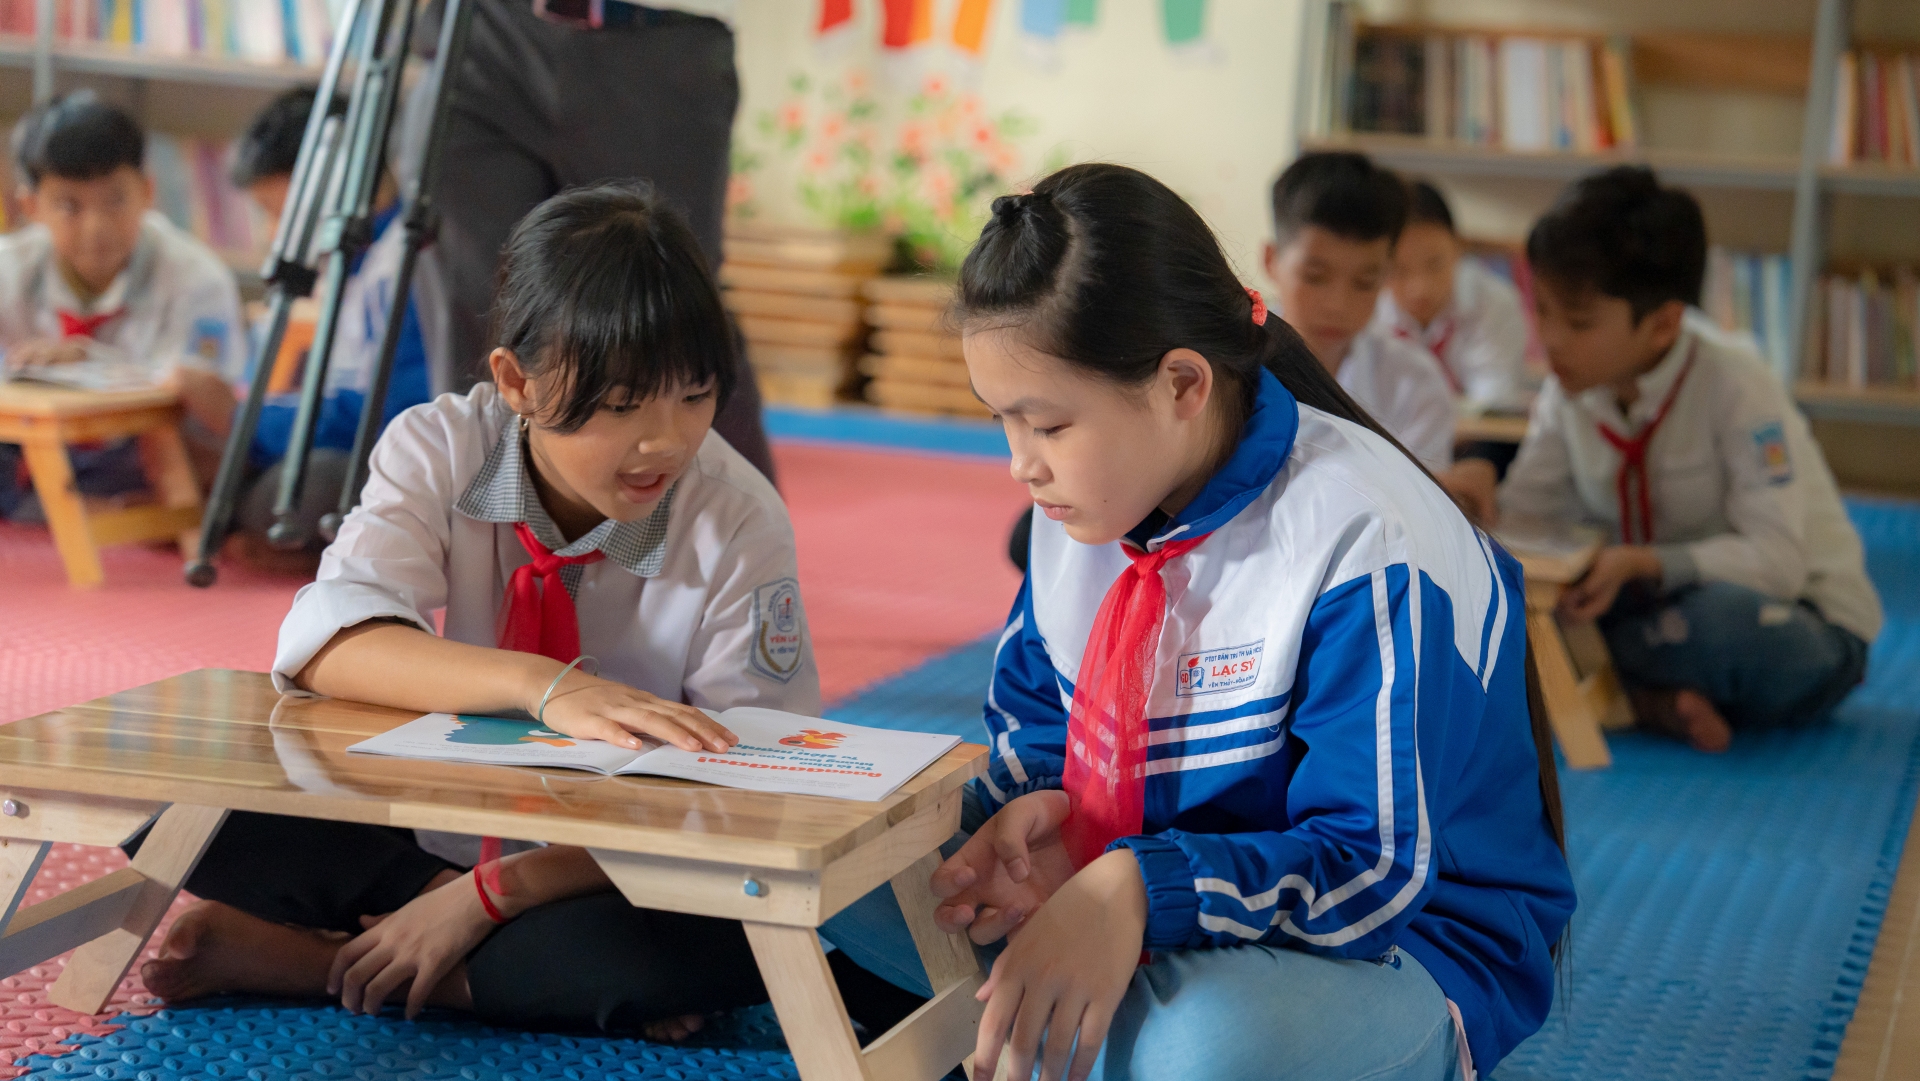 Chứng khoán KB hỗ trợ mạnh mẽ cho học tập của trẻ em vùng núi tại Việt Nam